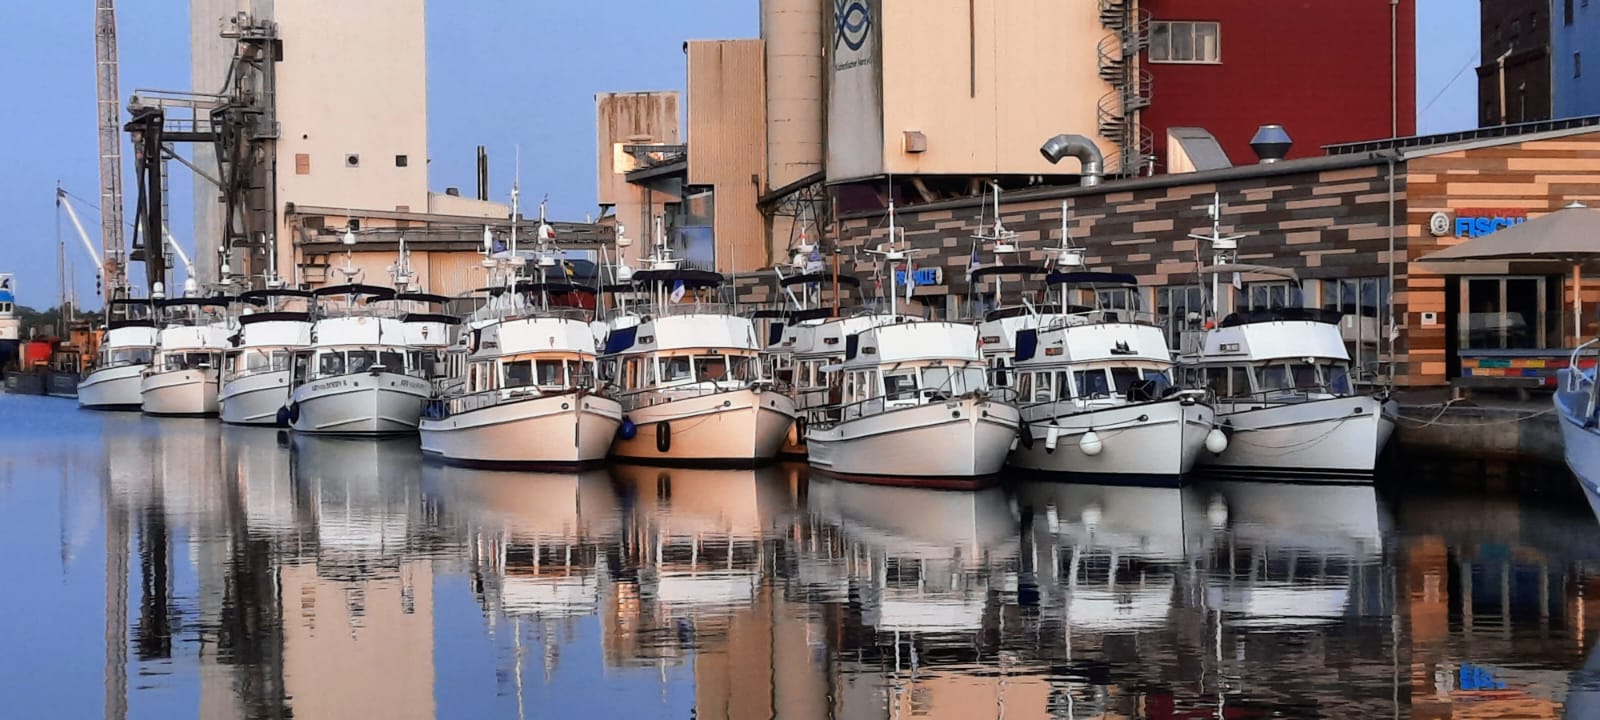 24 Grand-Banks-Trawler, die den weißen nordamerikanischen Fischereibooten nachempfundenen sind, liegen im Päckchen an der Pier im Kommunalhafen von Heiligenhafen.